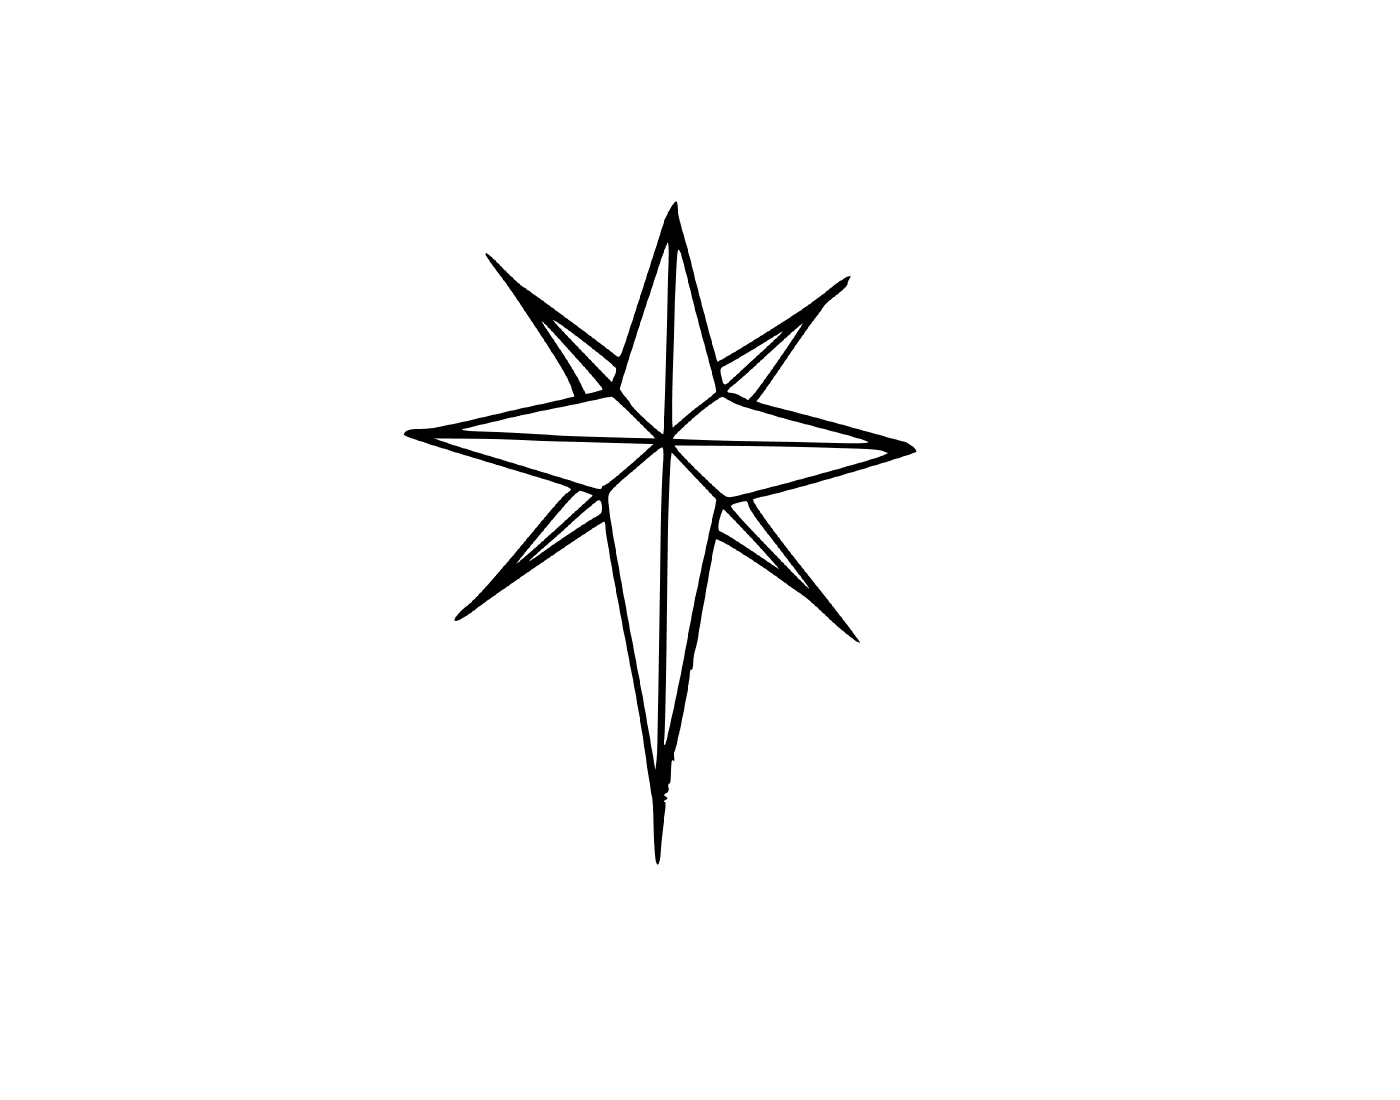  Una estrella de Navidad con ocho ramas 